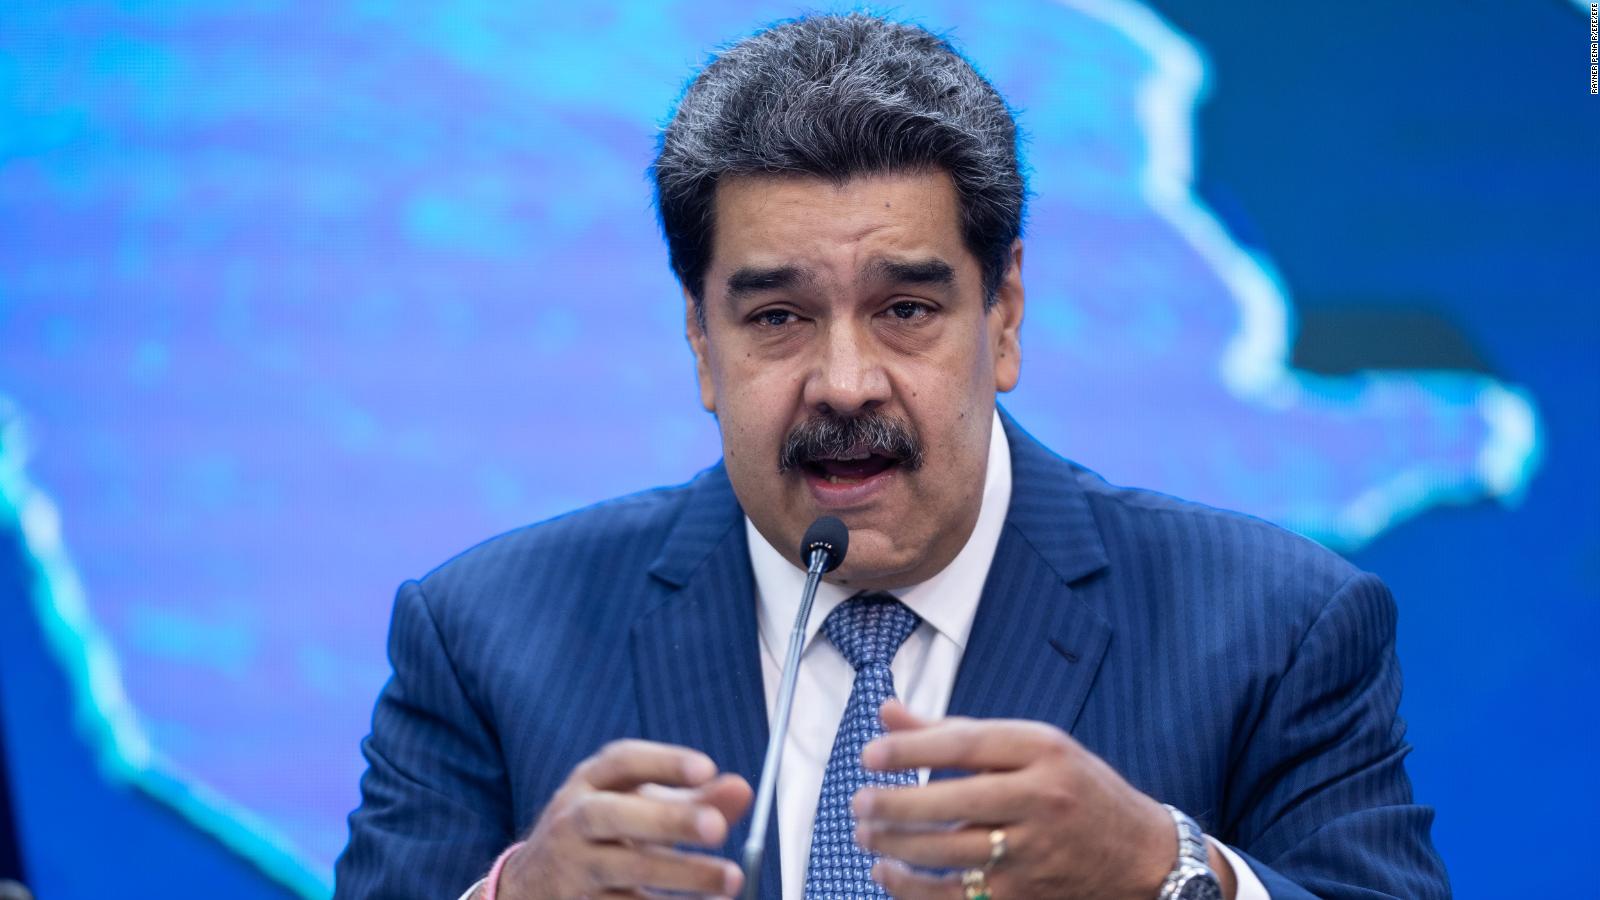 Maduro creó la figura de "diplomático" de Alex Saab para darle inmunidad, dice embajador de Venezuela en EE.UU.